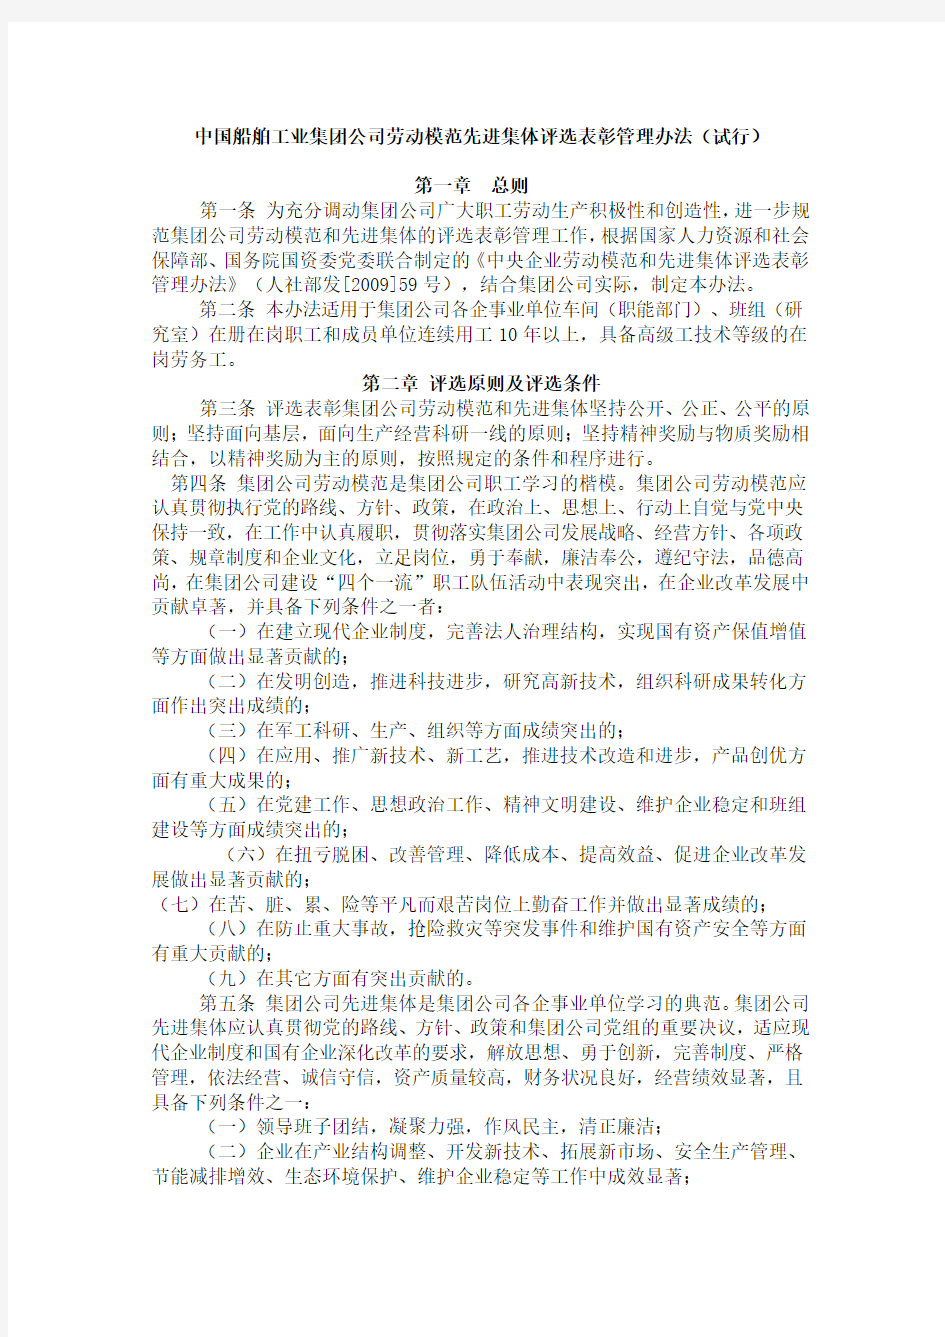 中国船舶工业集团公司劳动模范、先进集体评选表彰管理办法